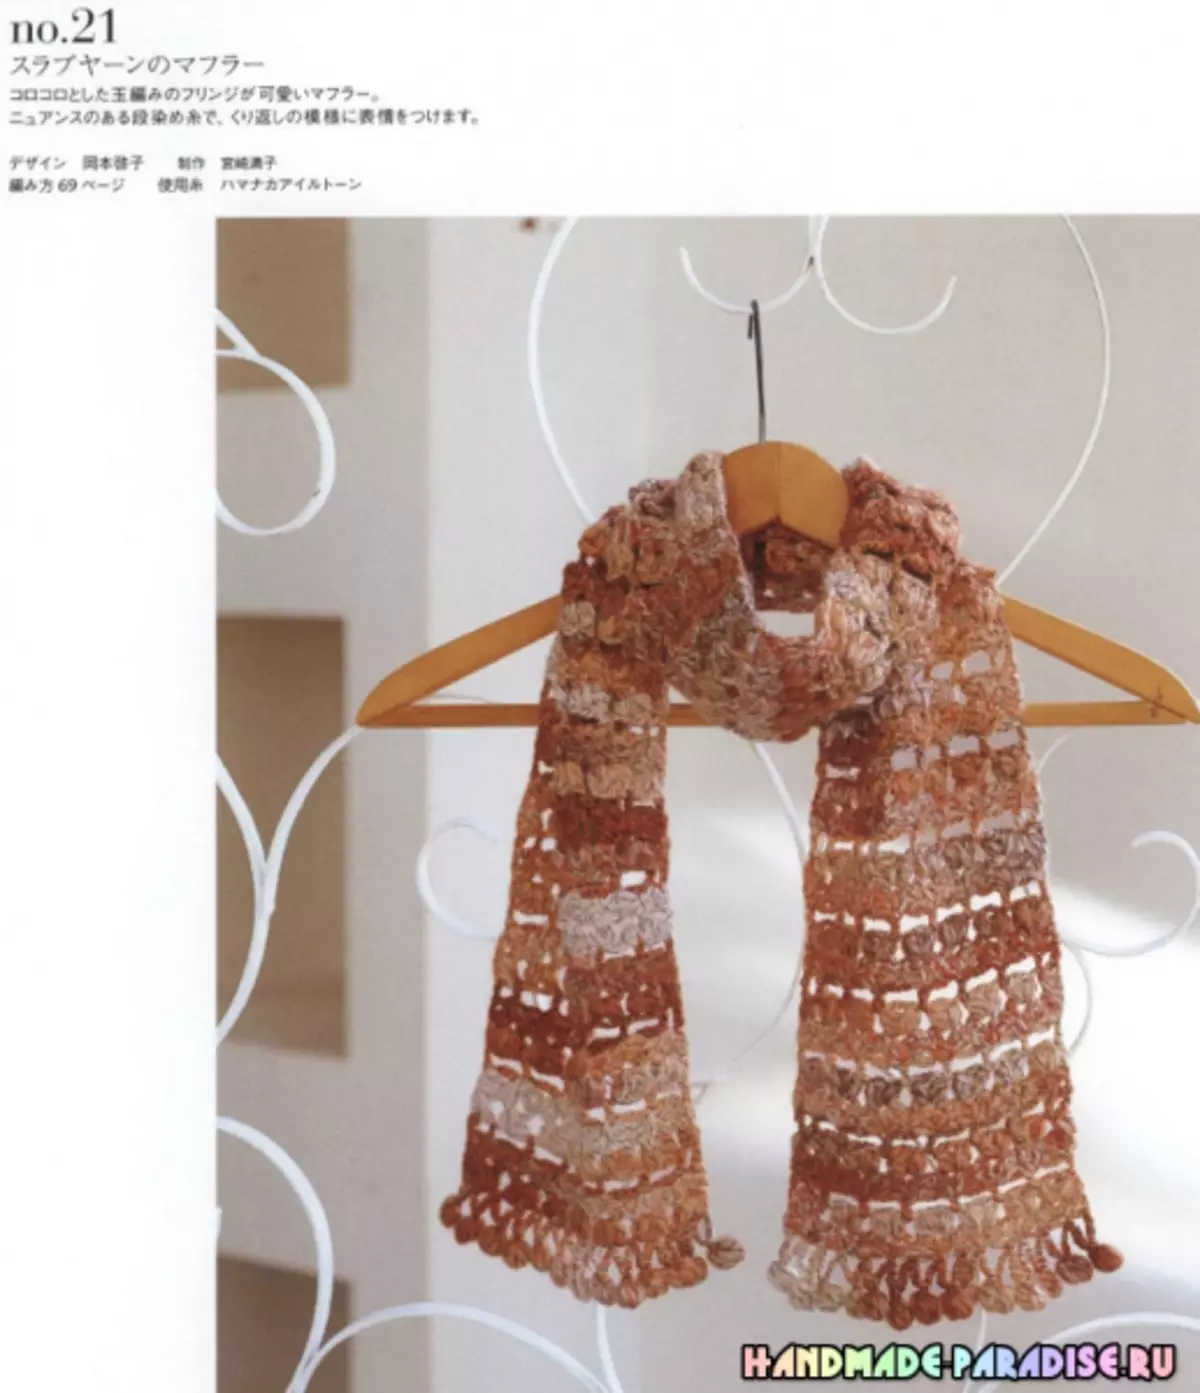 Bergaya mengait crochet. Majalah Jepun dengan skim